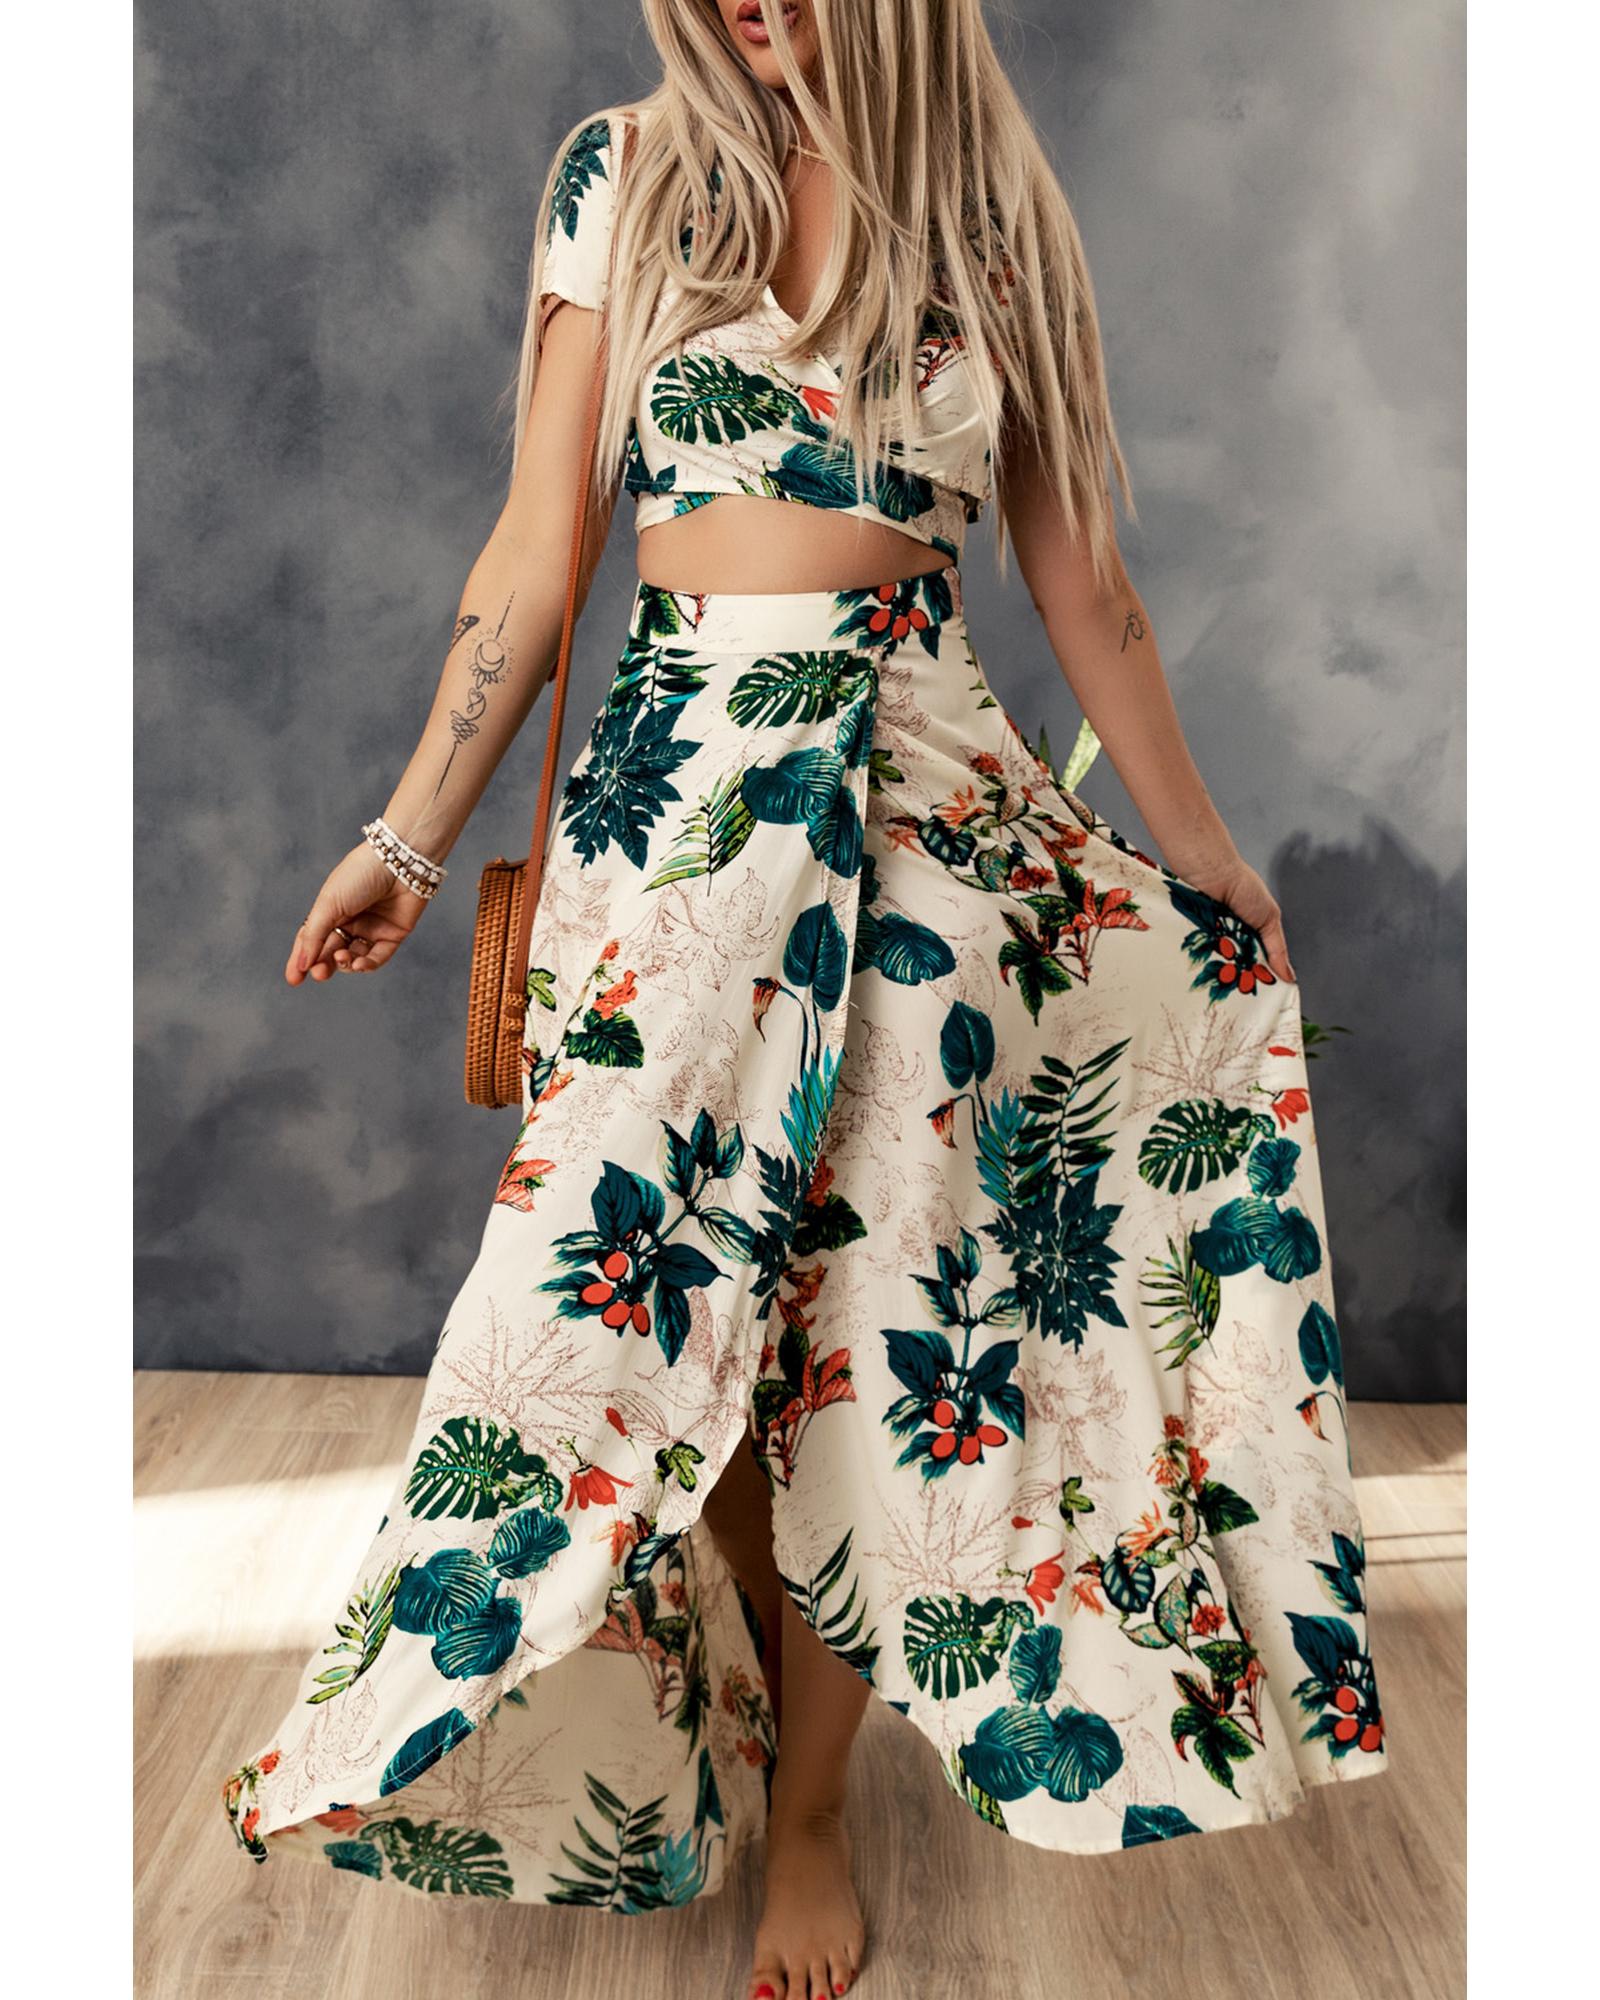 Tropical Print Crop Top and Maxi Skirt Set - XL